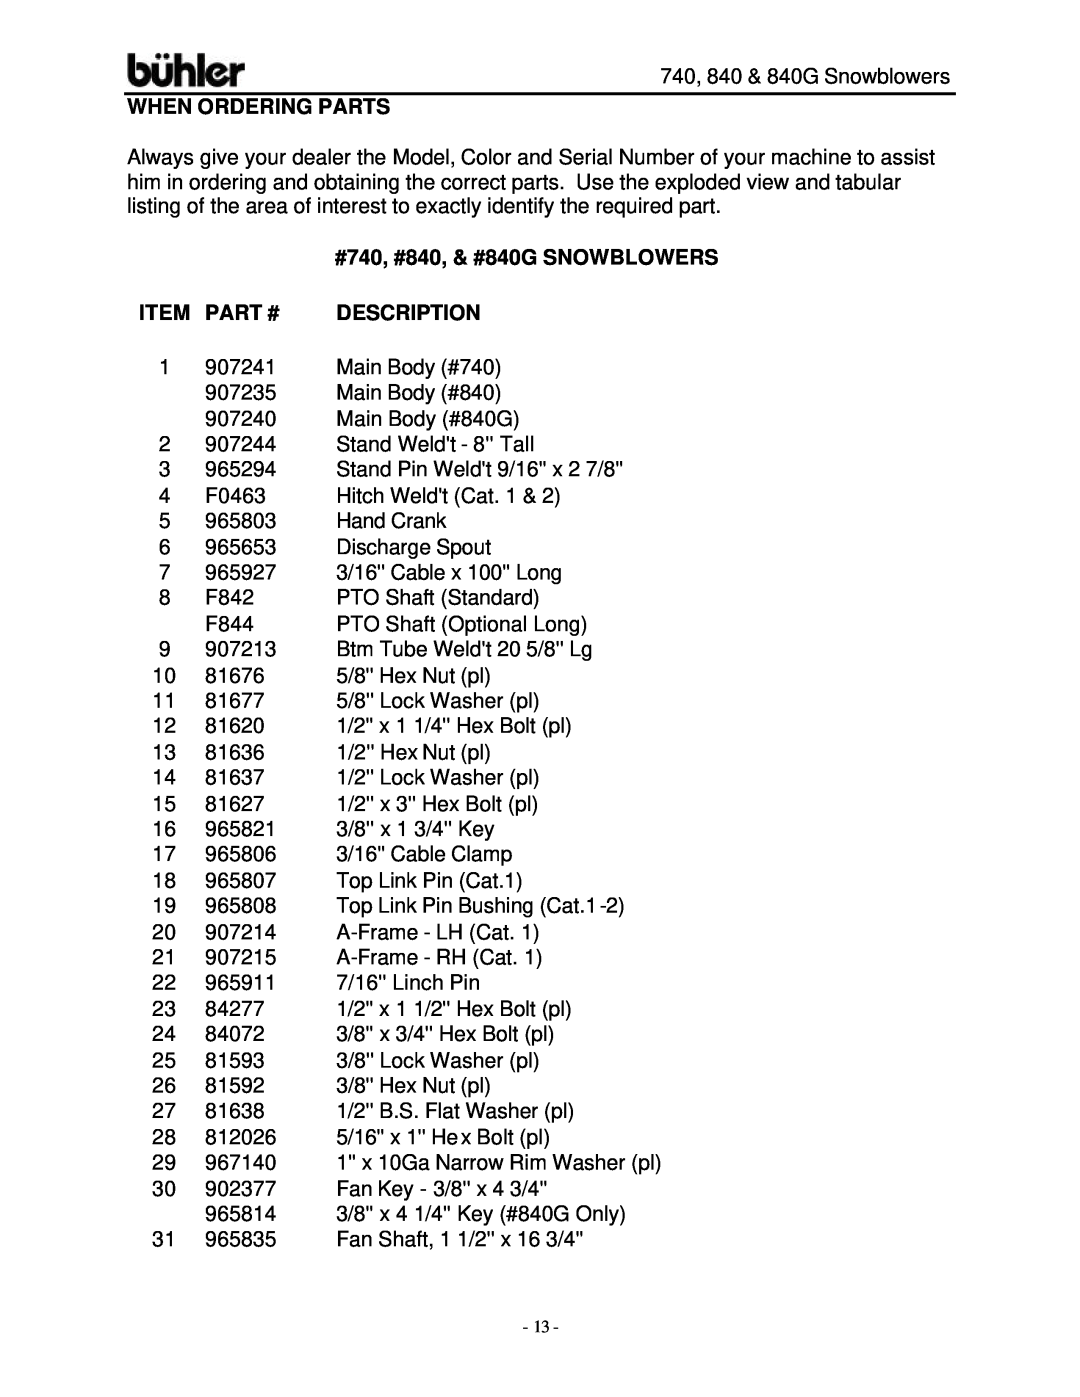 Buhler FK314, FK313 warranty When Ordering Parts, #740, #840, & #840G SNOWBLOWERS, Item Part #, Description 